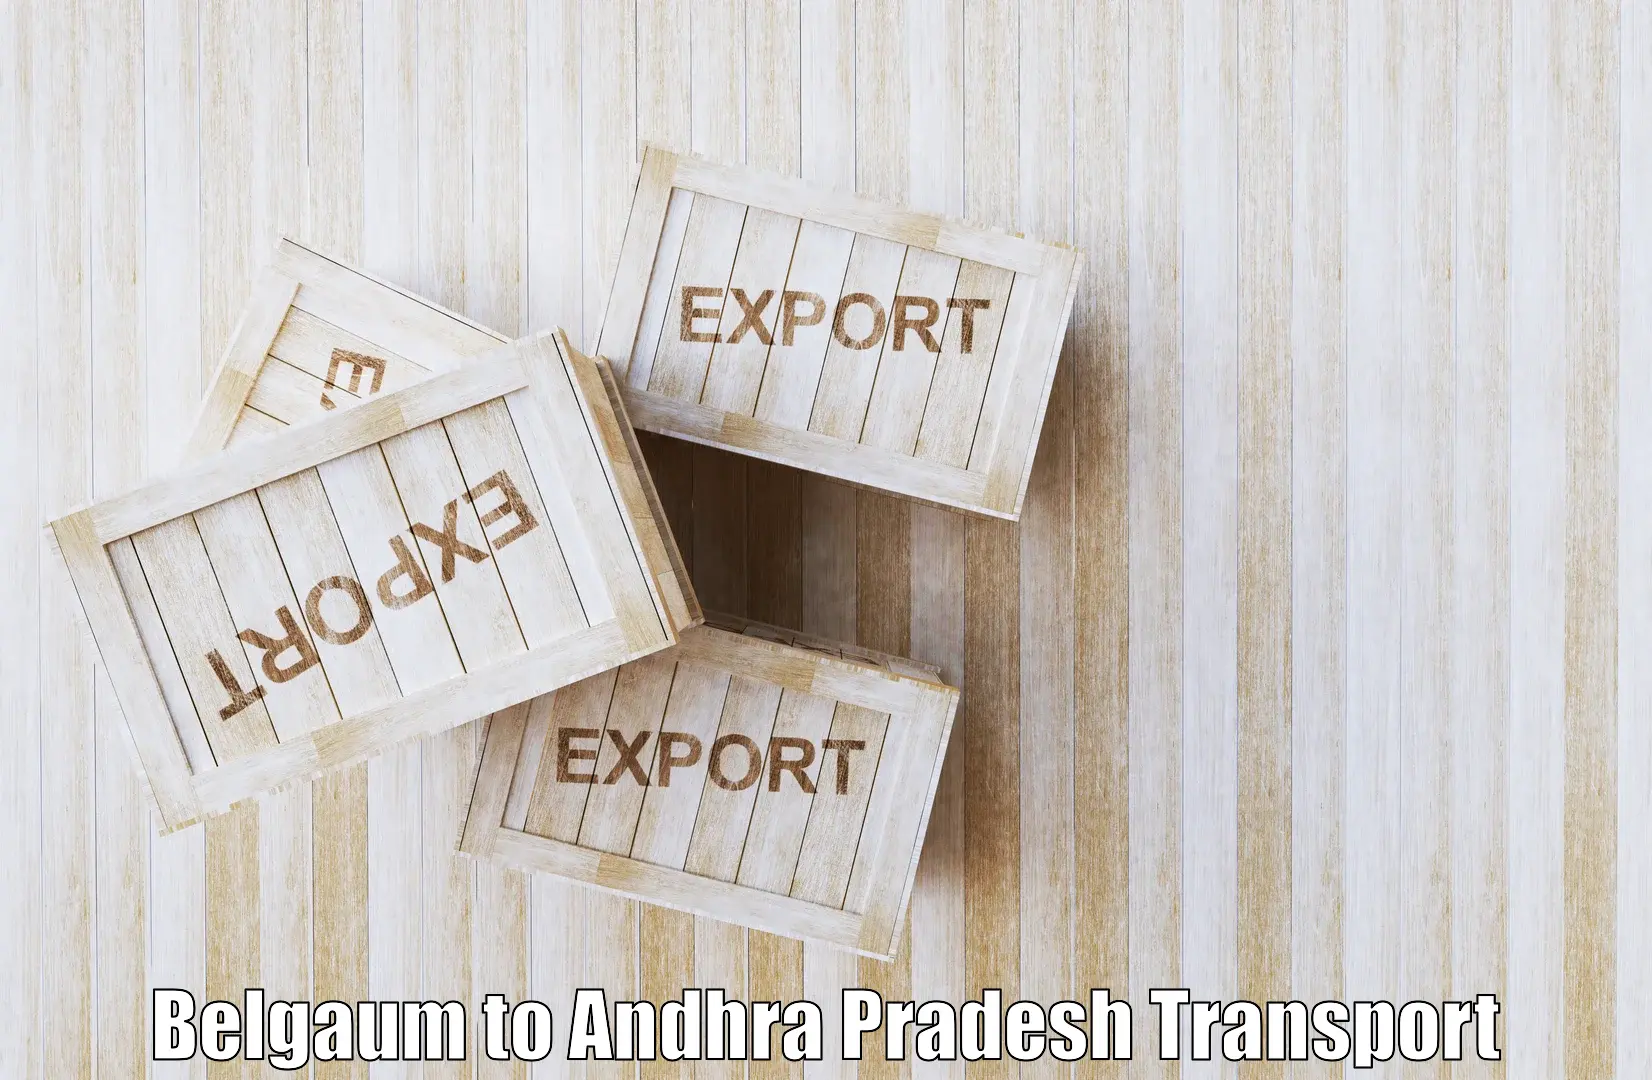 Transport shared services Belgaum to Andhra Pradesh